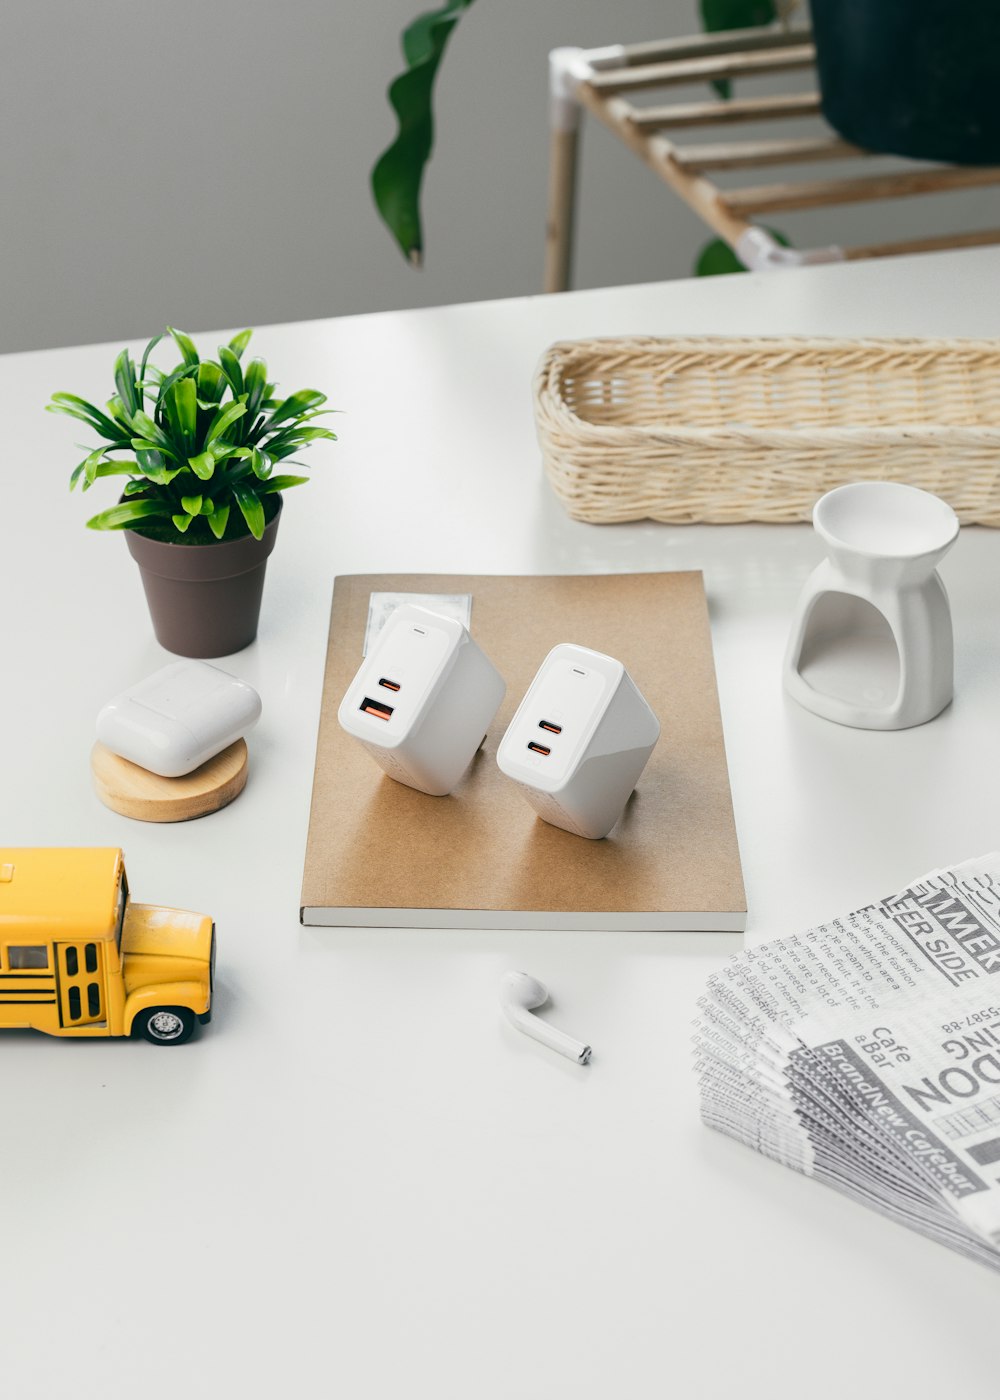 Weißer Apple Charger Adapter neben gelber Box